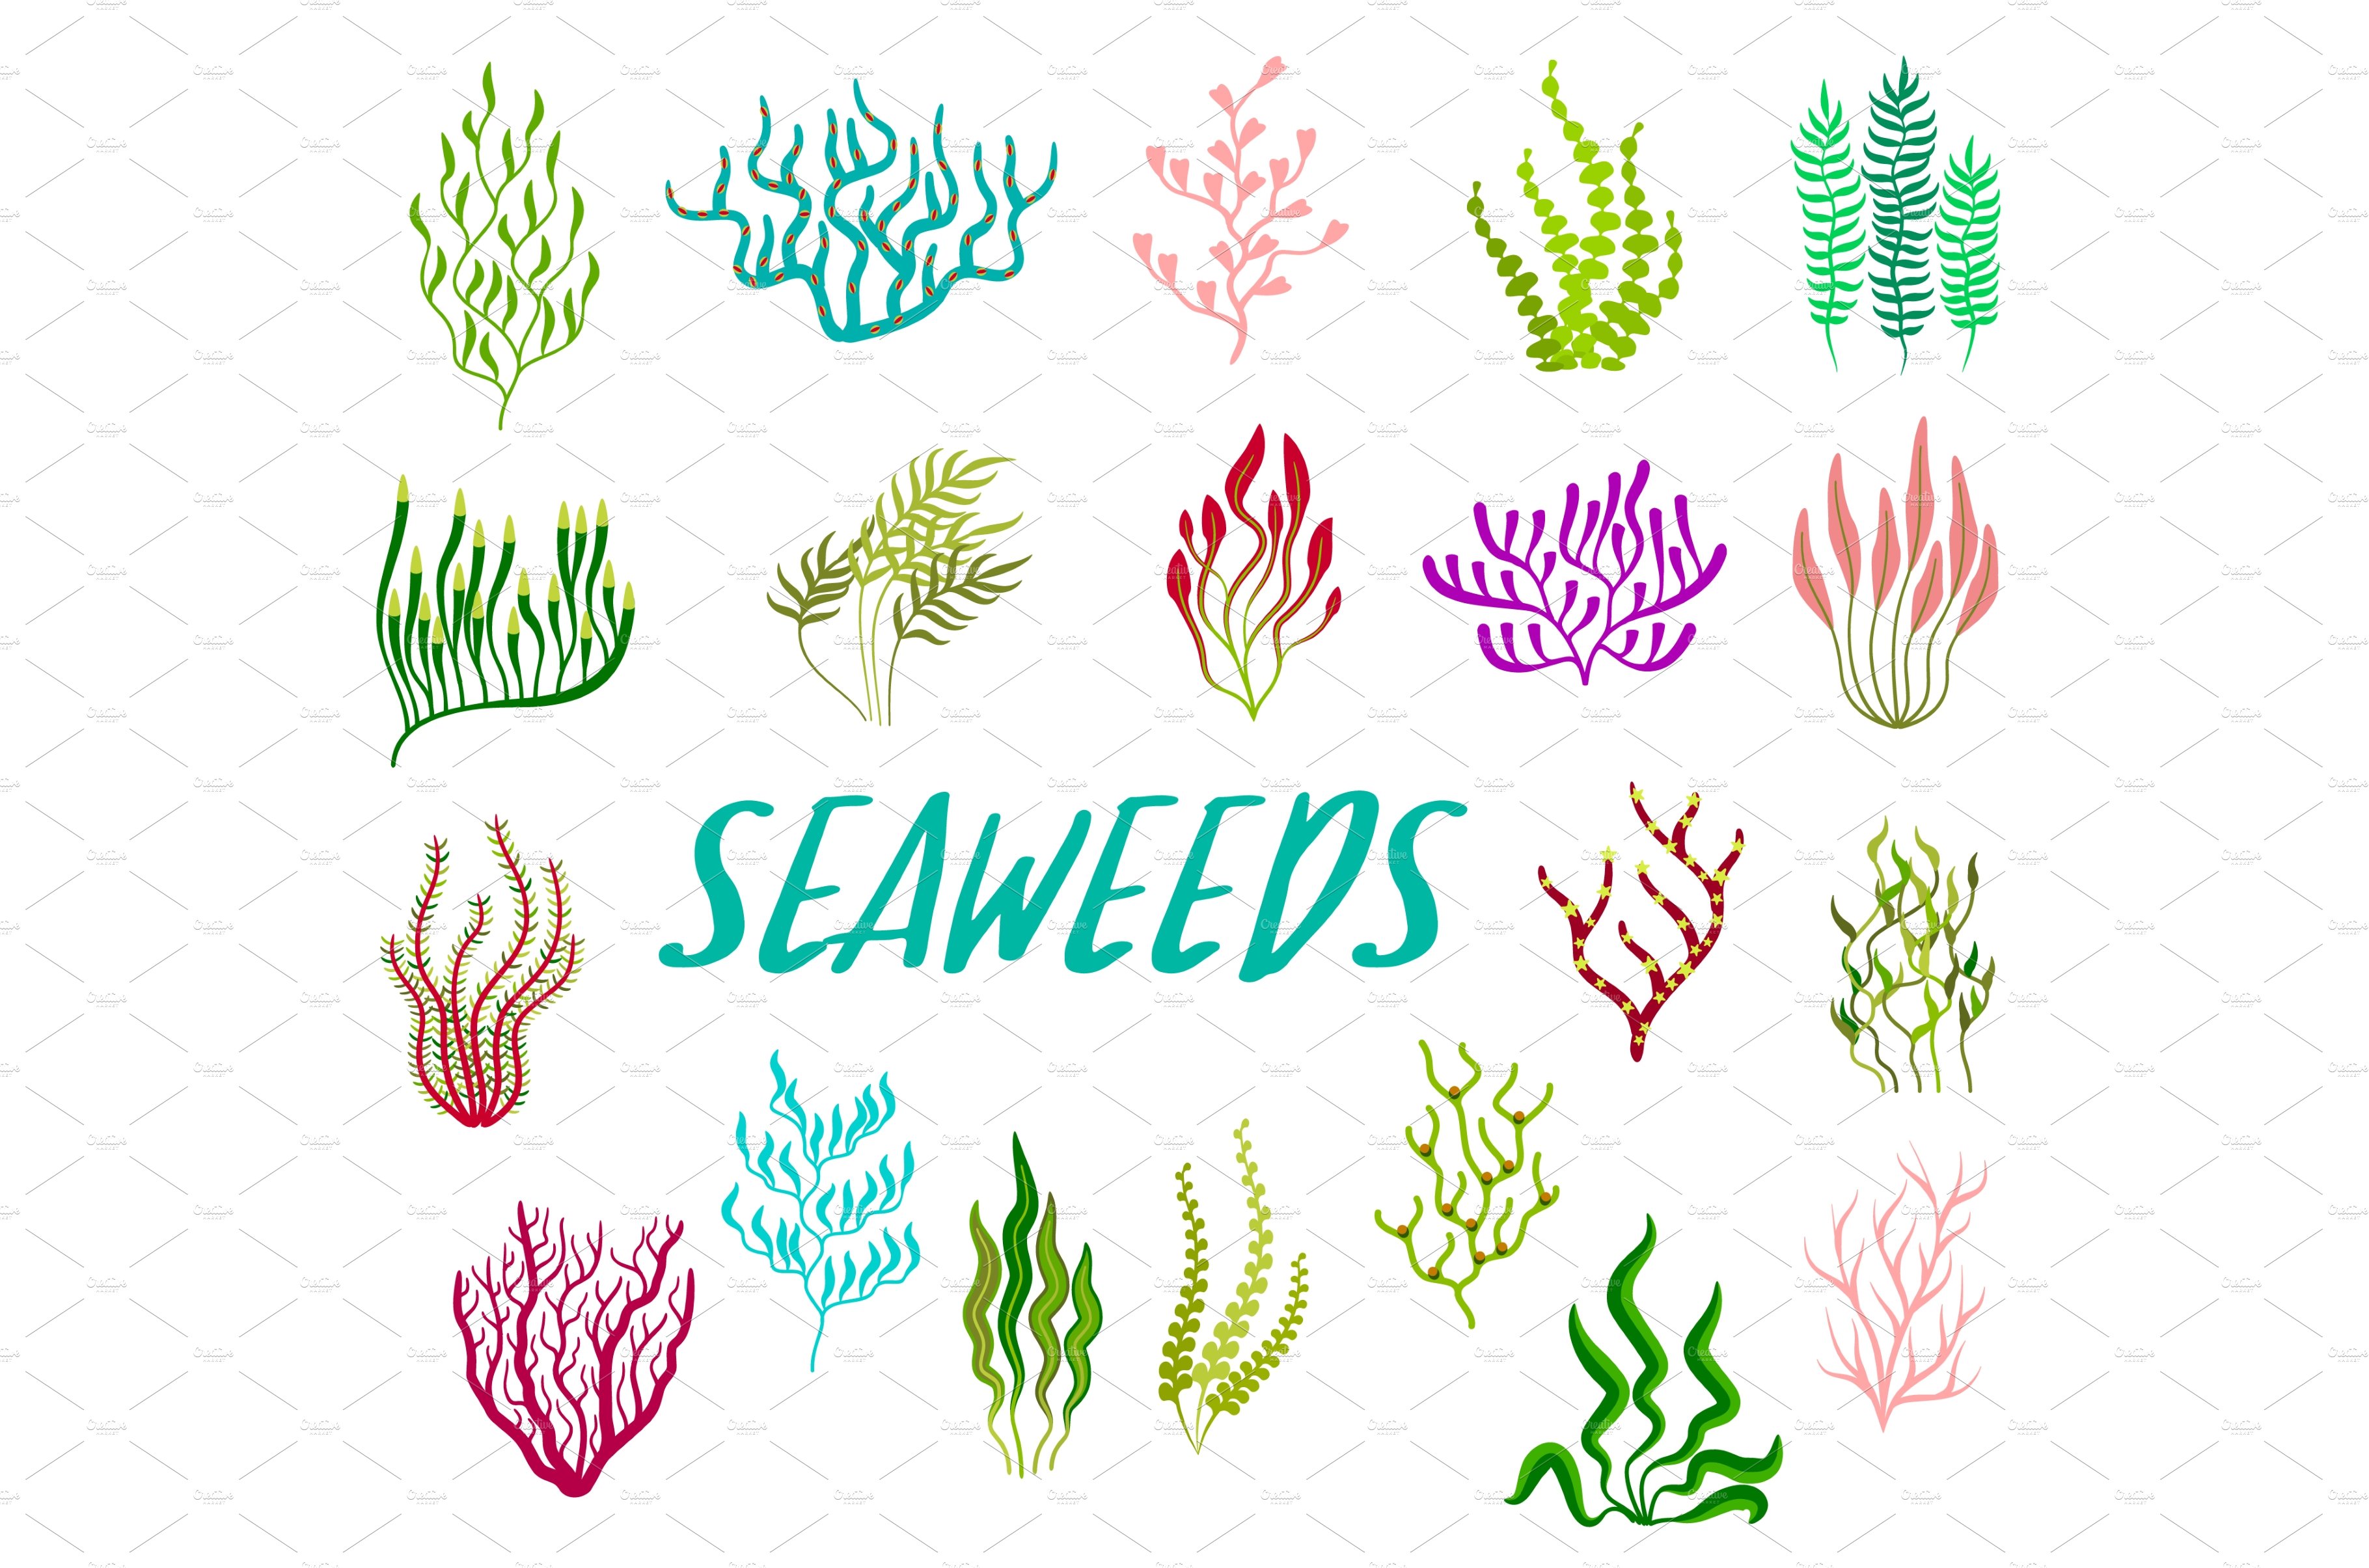 Underwater seaweed plants cover image.